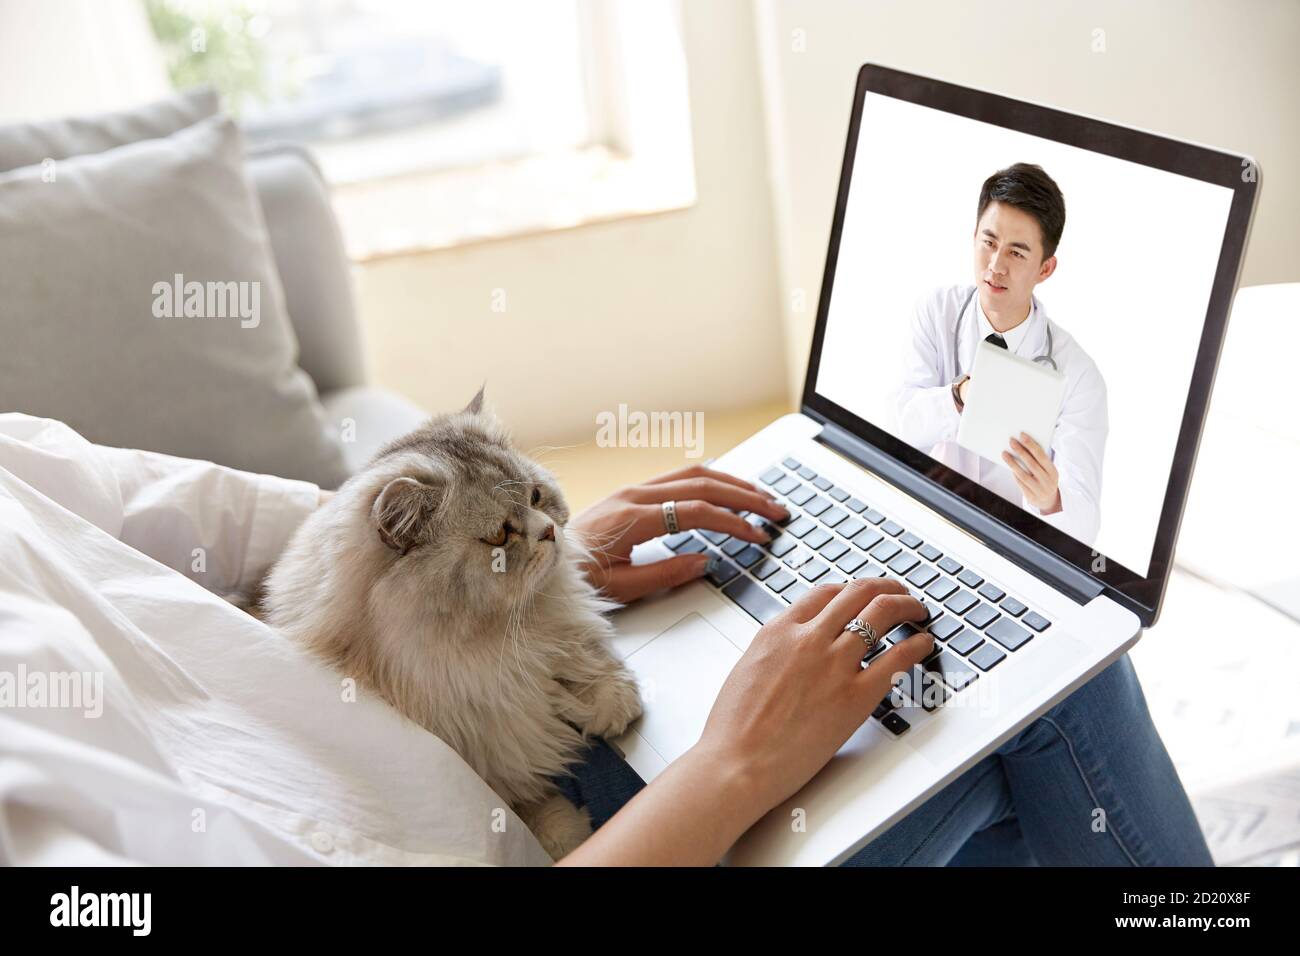 giovane donna asiatica che si trova a casa con pet cat consulenza un medico tramite videochiamata utilizzando un computer portatile Foto Stock